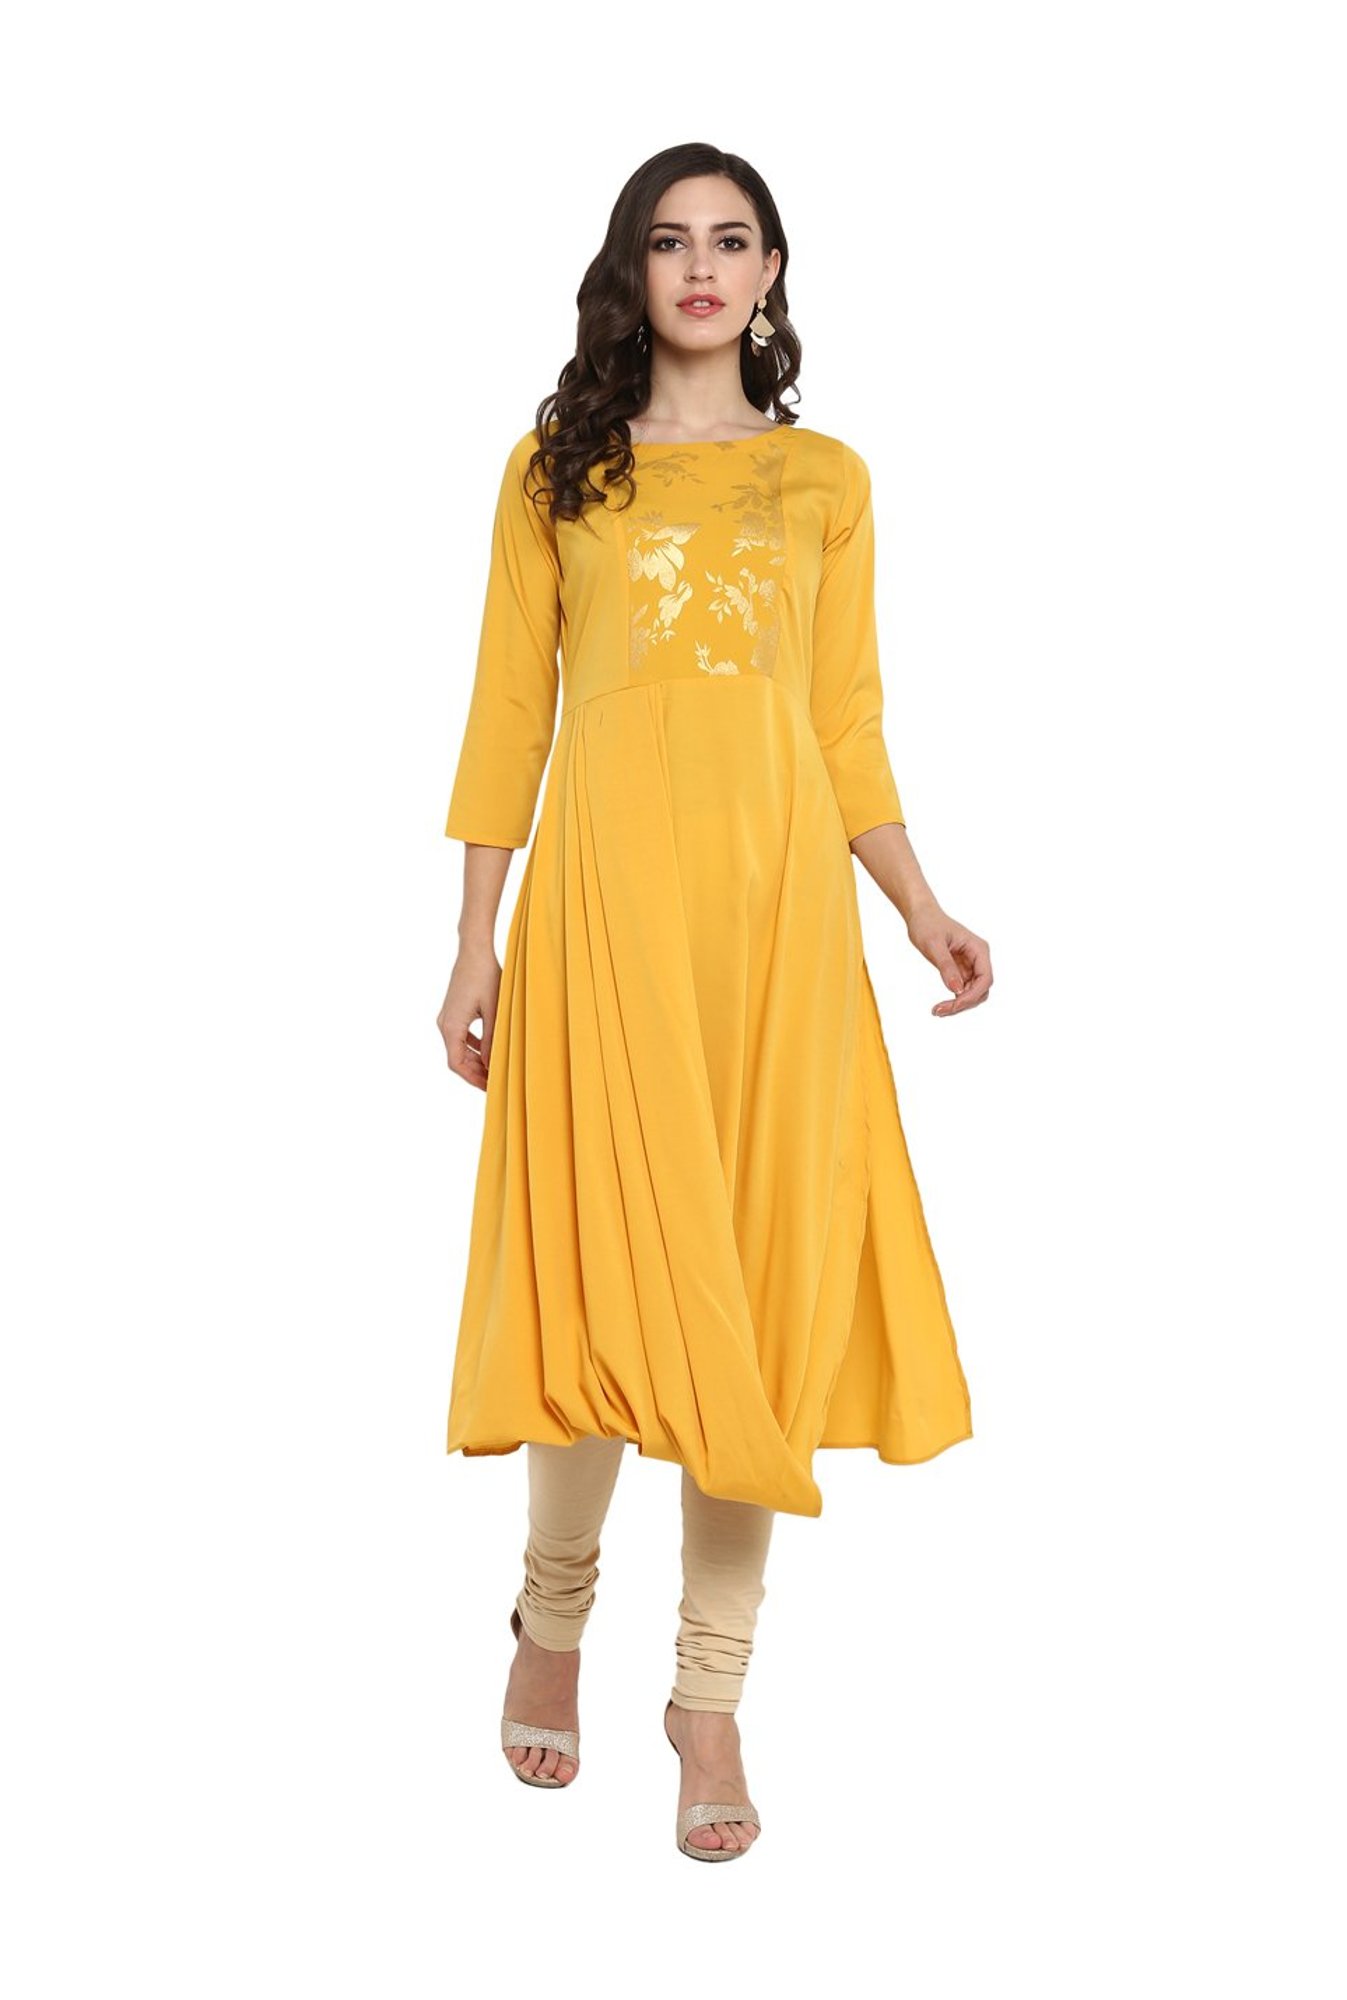 Buy Ahalyaa Yellow Printed Straight Kurti for Women Online @ Tata CLiQ